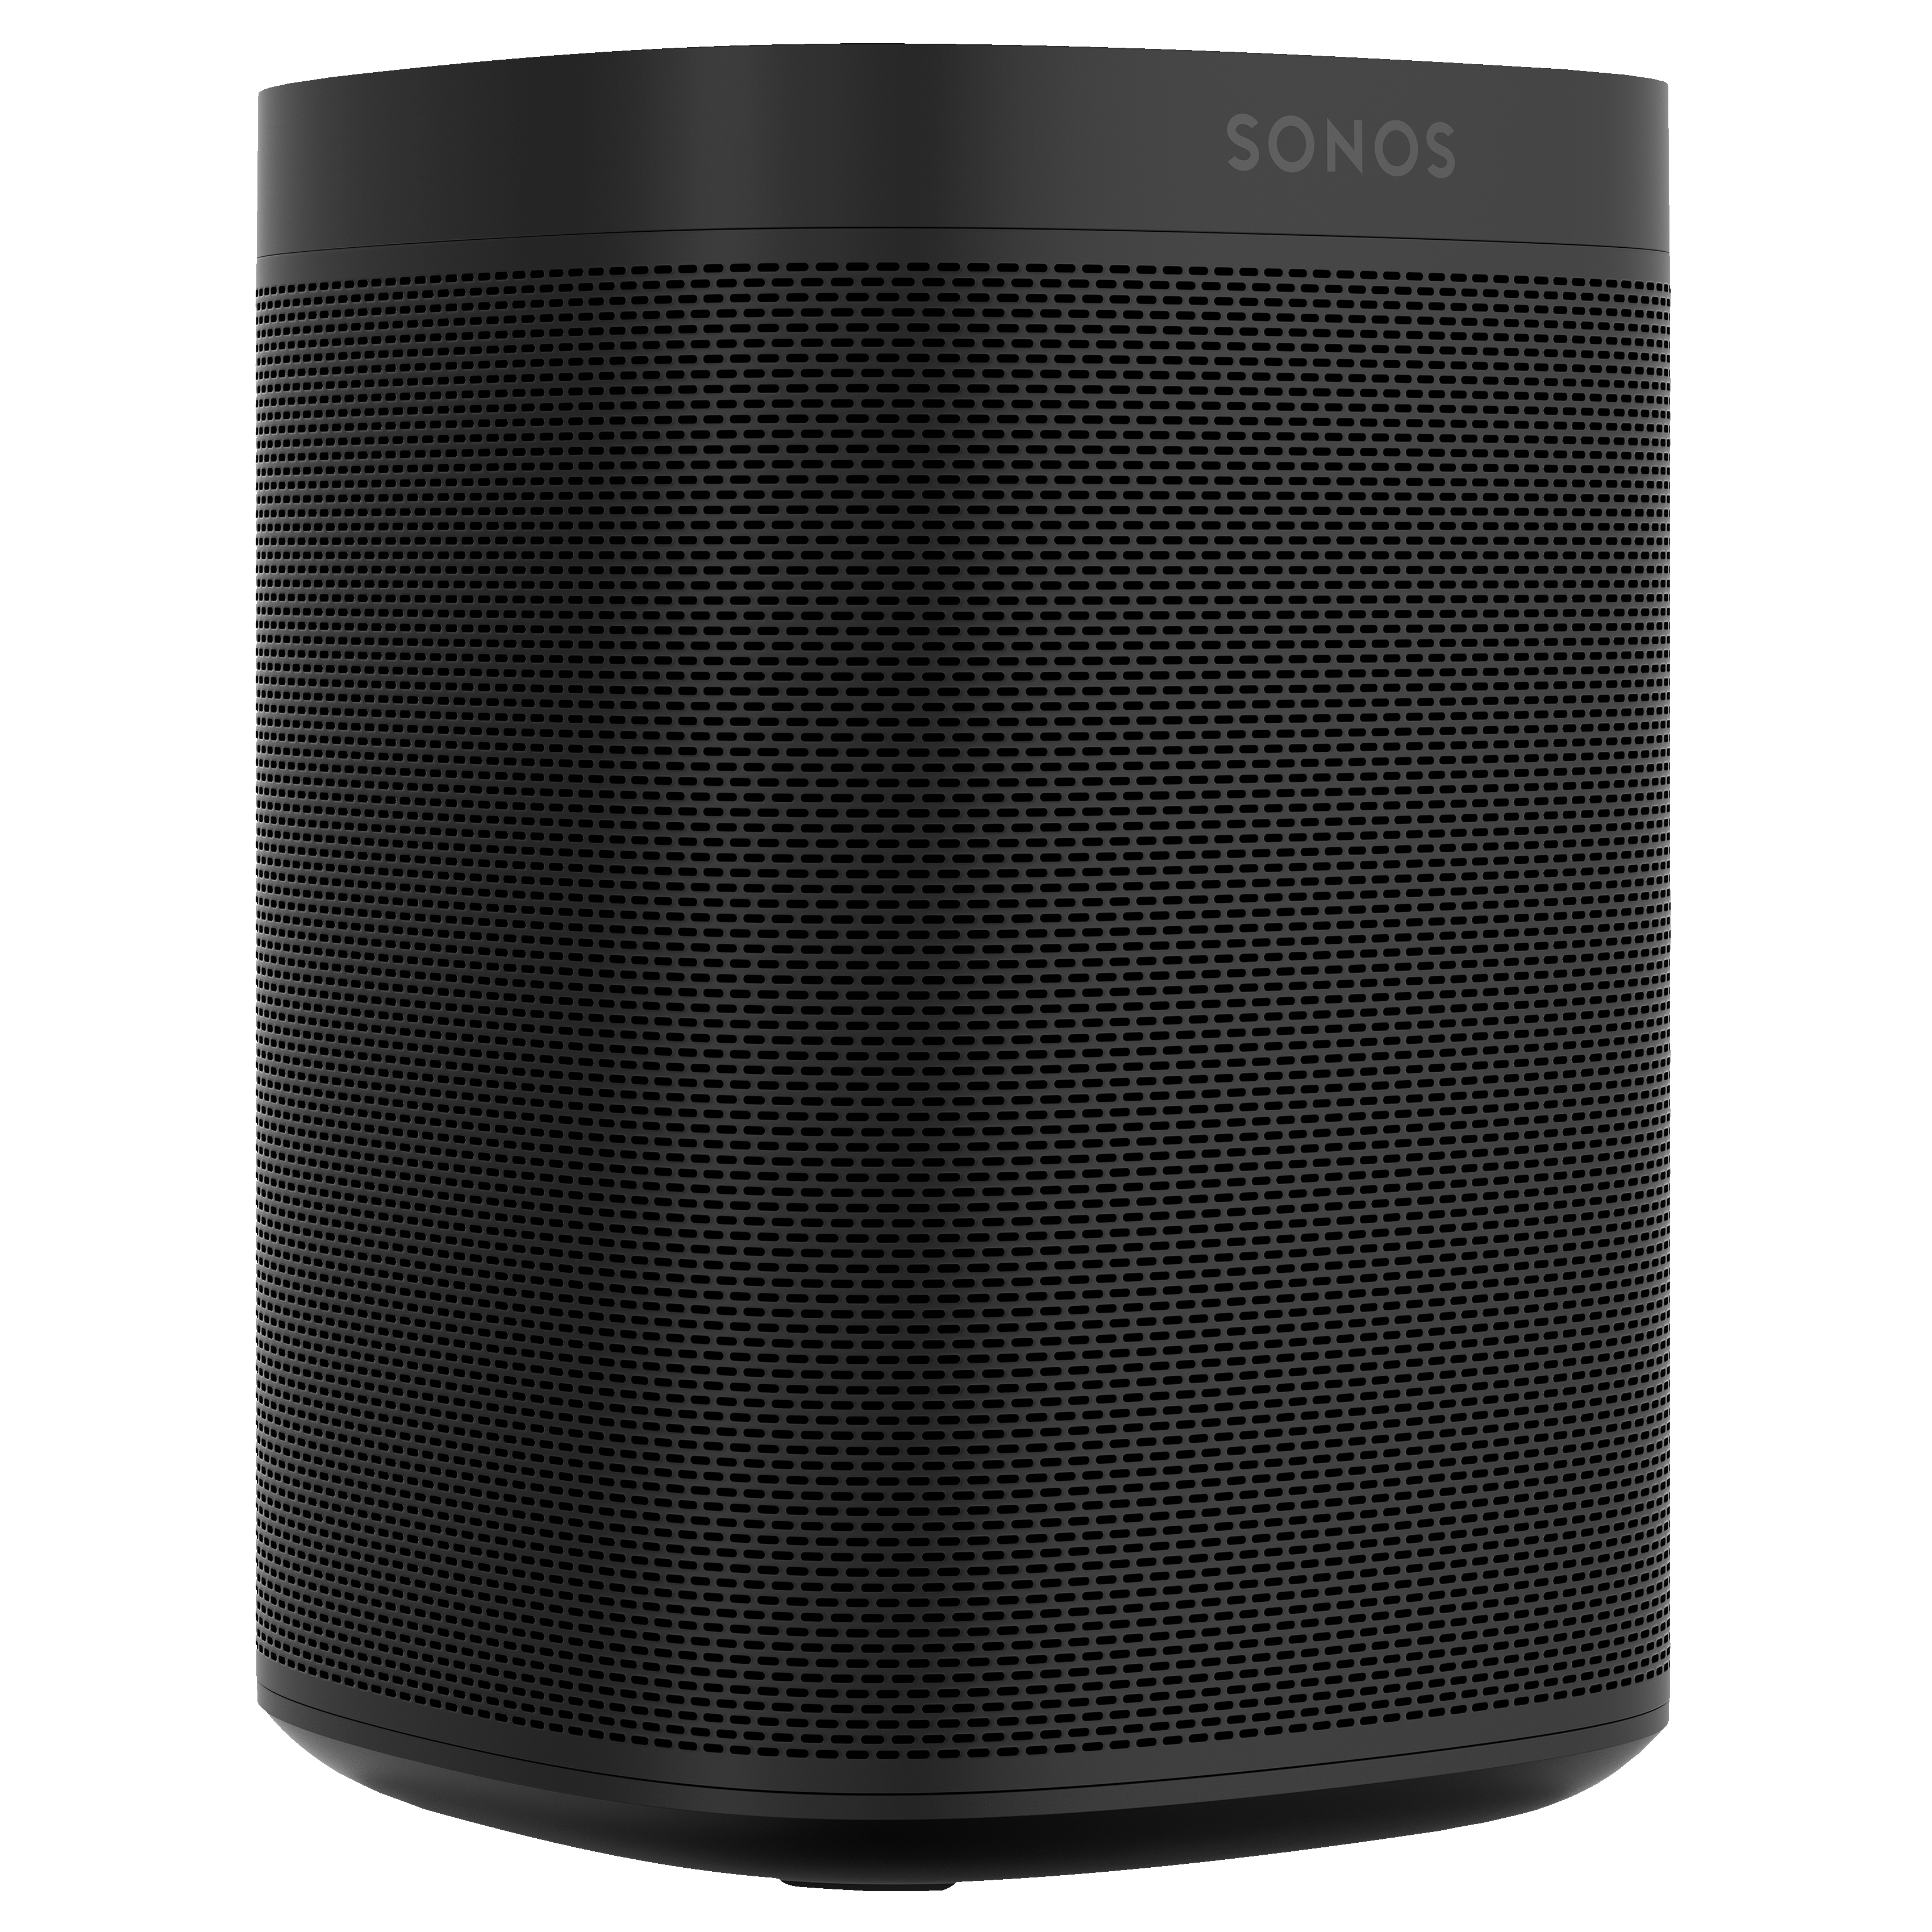 Sonos One Gen 2 høyttaler (sort) - WiFi-høyttaler & Multiroom - Elkjøp